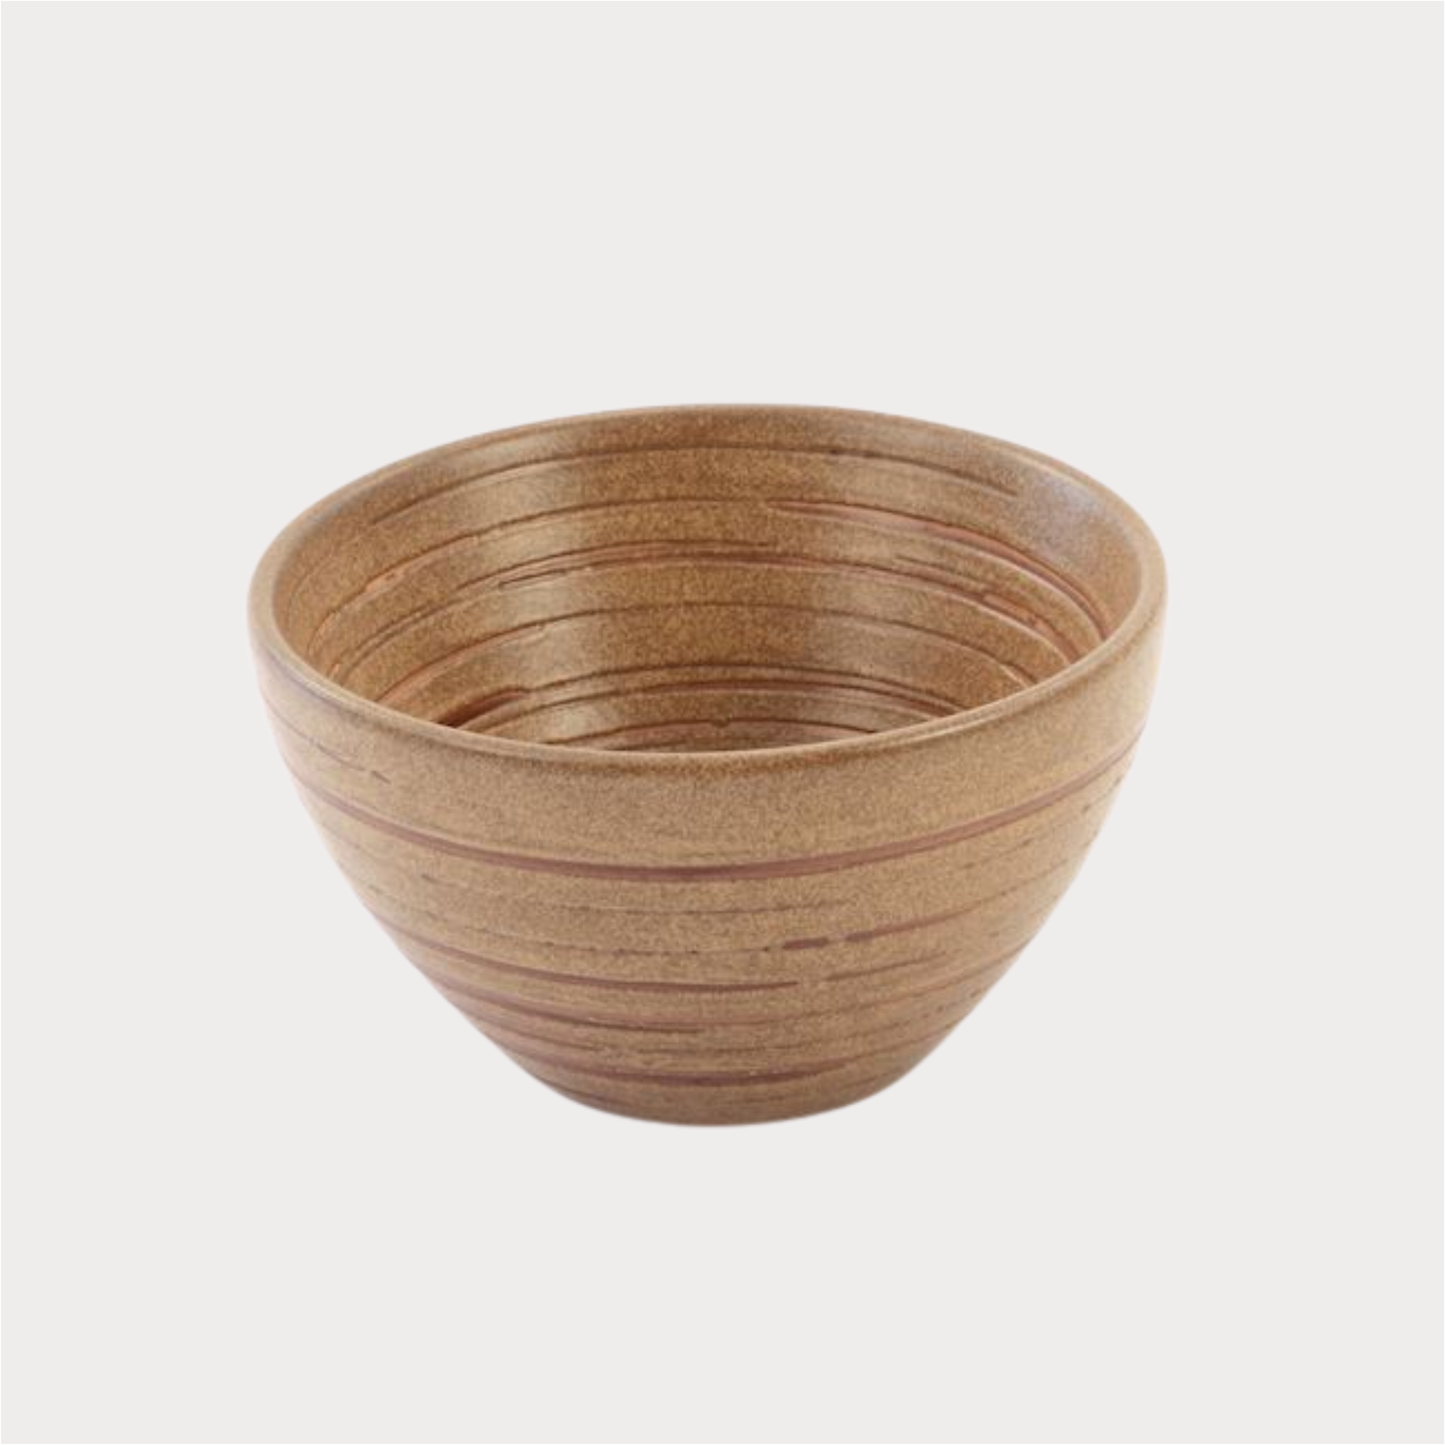 Cup "Fung" Keramik 0,2 l 1 Stück ChaCult